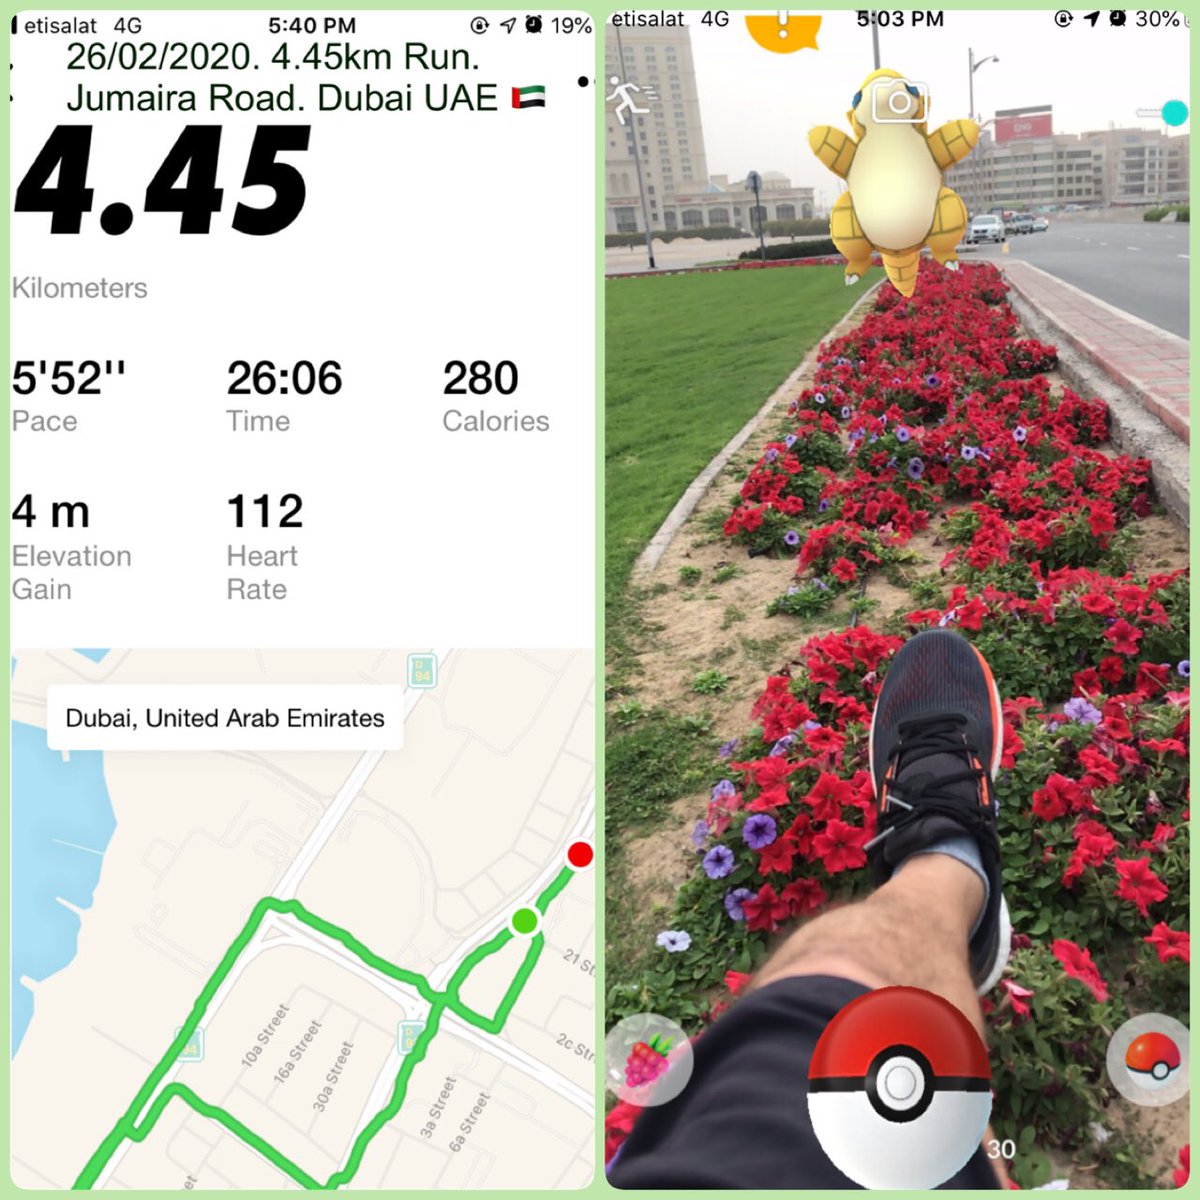 26/02/2020. 4.45km Run. Jumaira Road. Dubai UAE 🇦🇪   Temperature 23c. 
#Running #RunningWithTumiSole #DelhiBurning #Dubai #adidas #PokemonGO #ngiritas #DubaiRunners  #RunForYourLife #RunWithUs